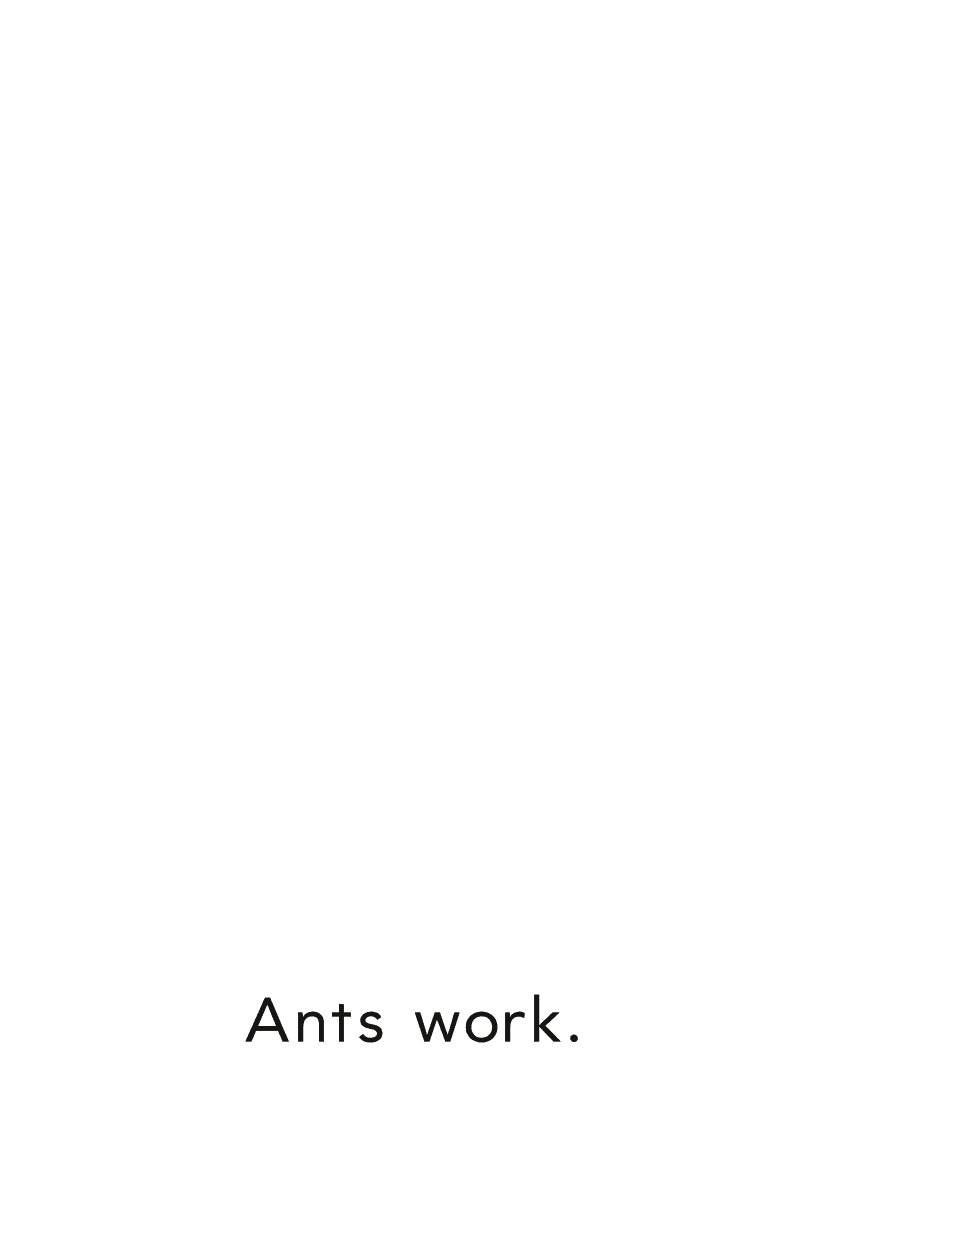 Ants work - photo 4